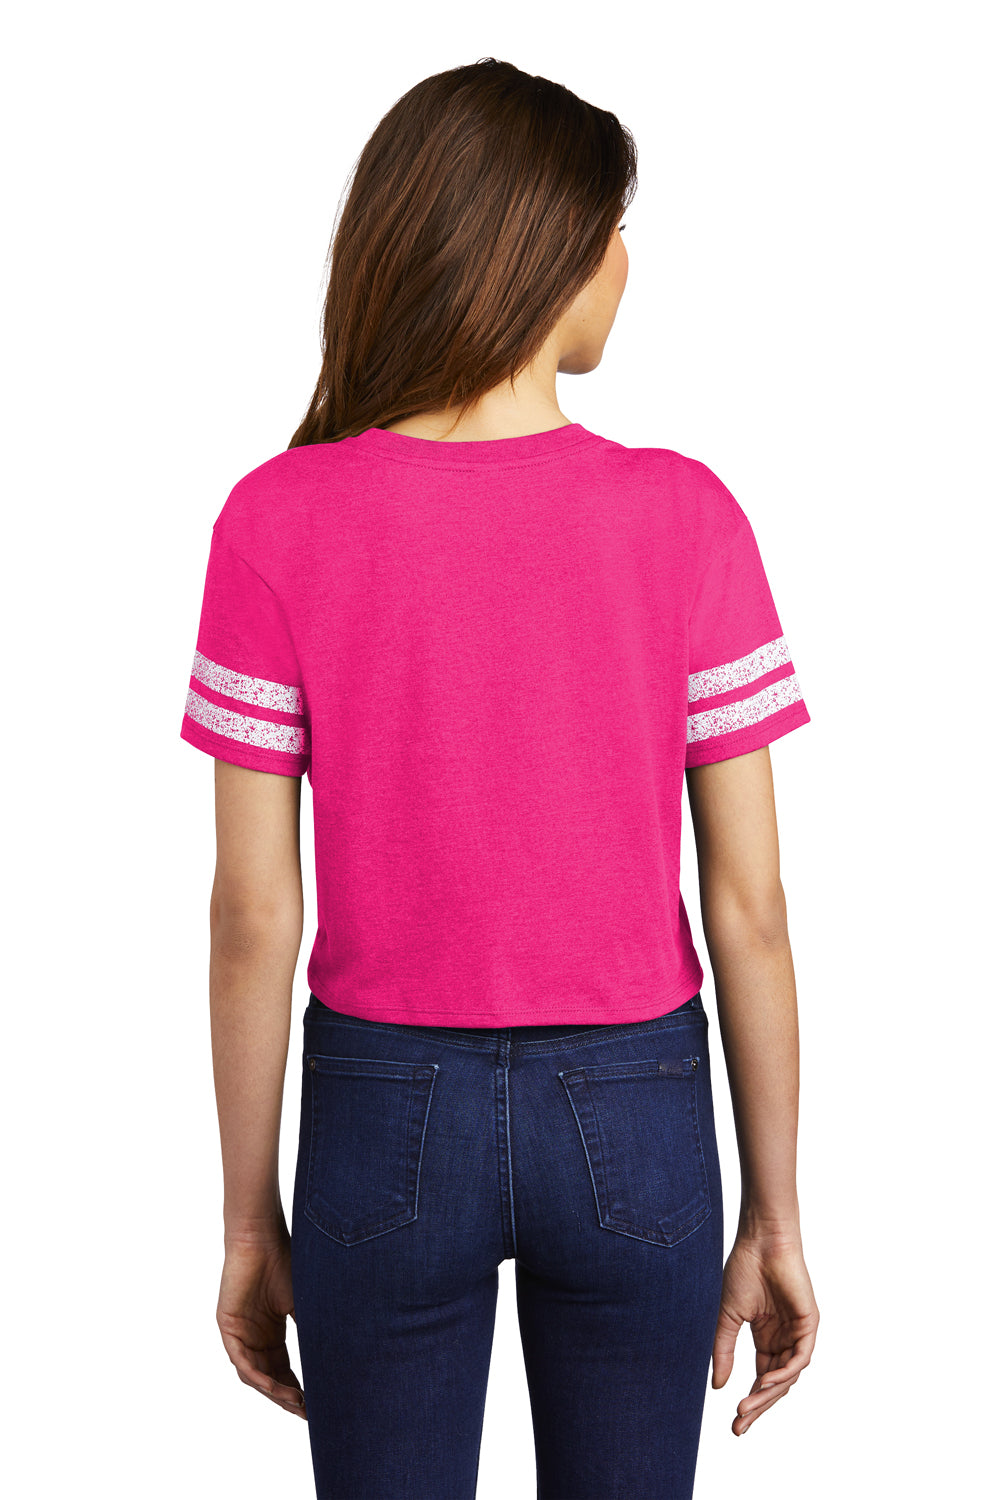 District Womens Scorecard Crop Short Sleeve Crewneck T-Shirt Heather Dark Fuchsia Pink/White Side